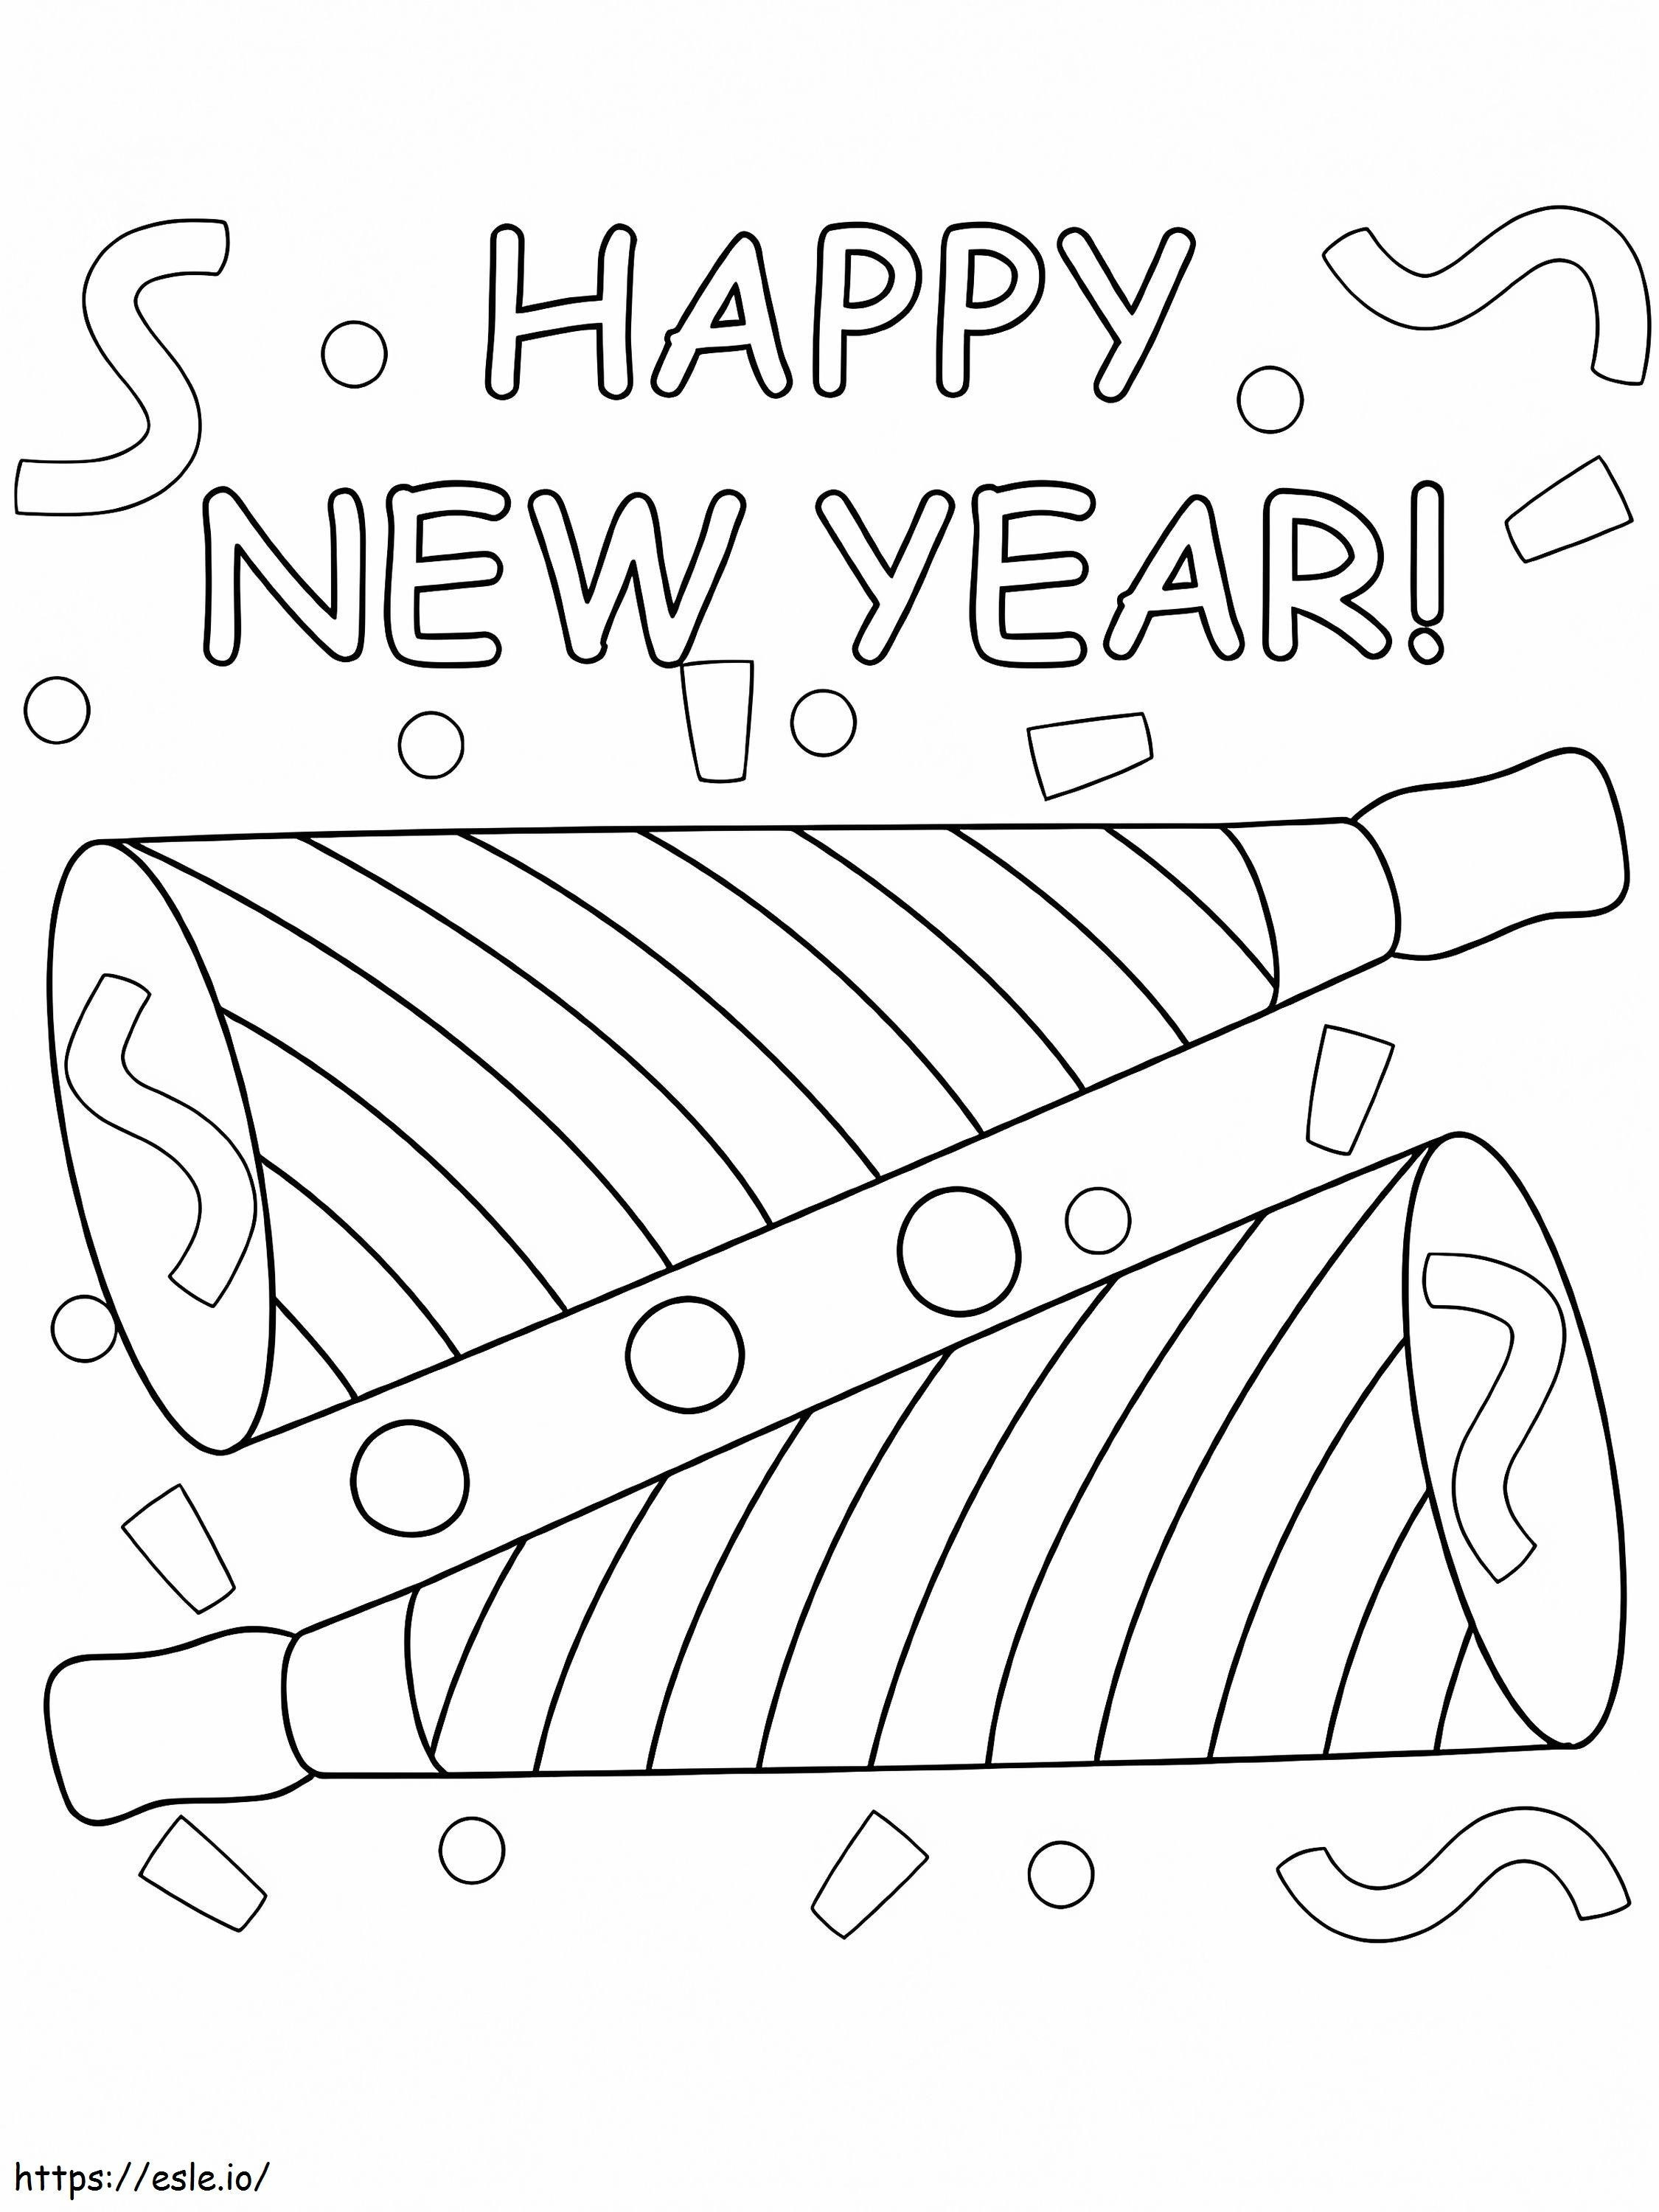 Desenho para colorir de trompete feliz ano novo para colorir